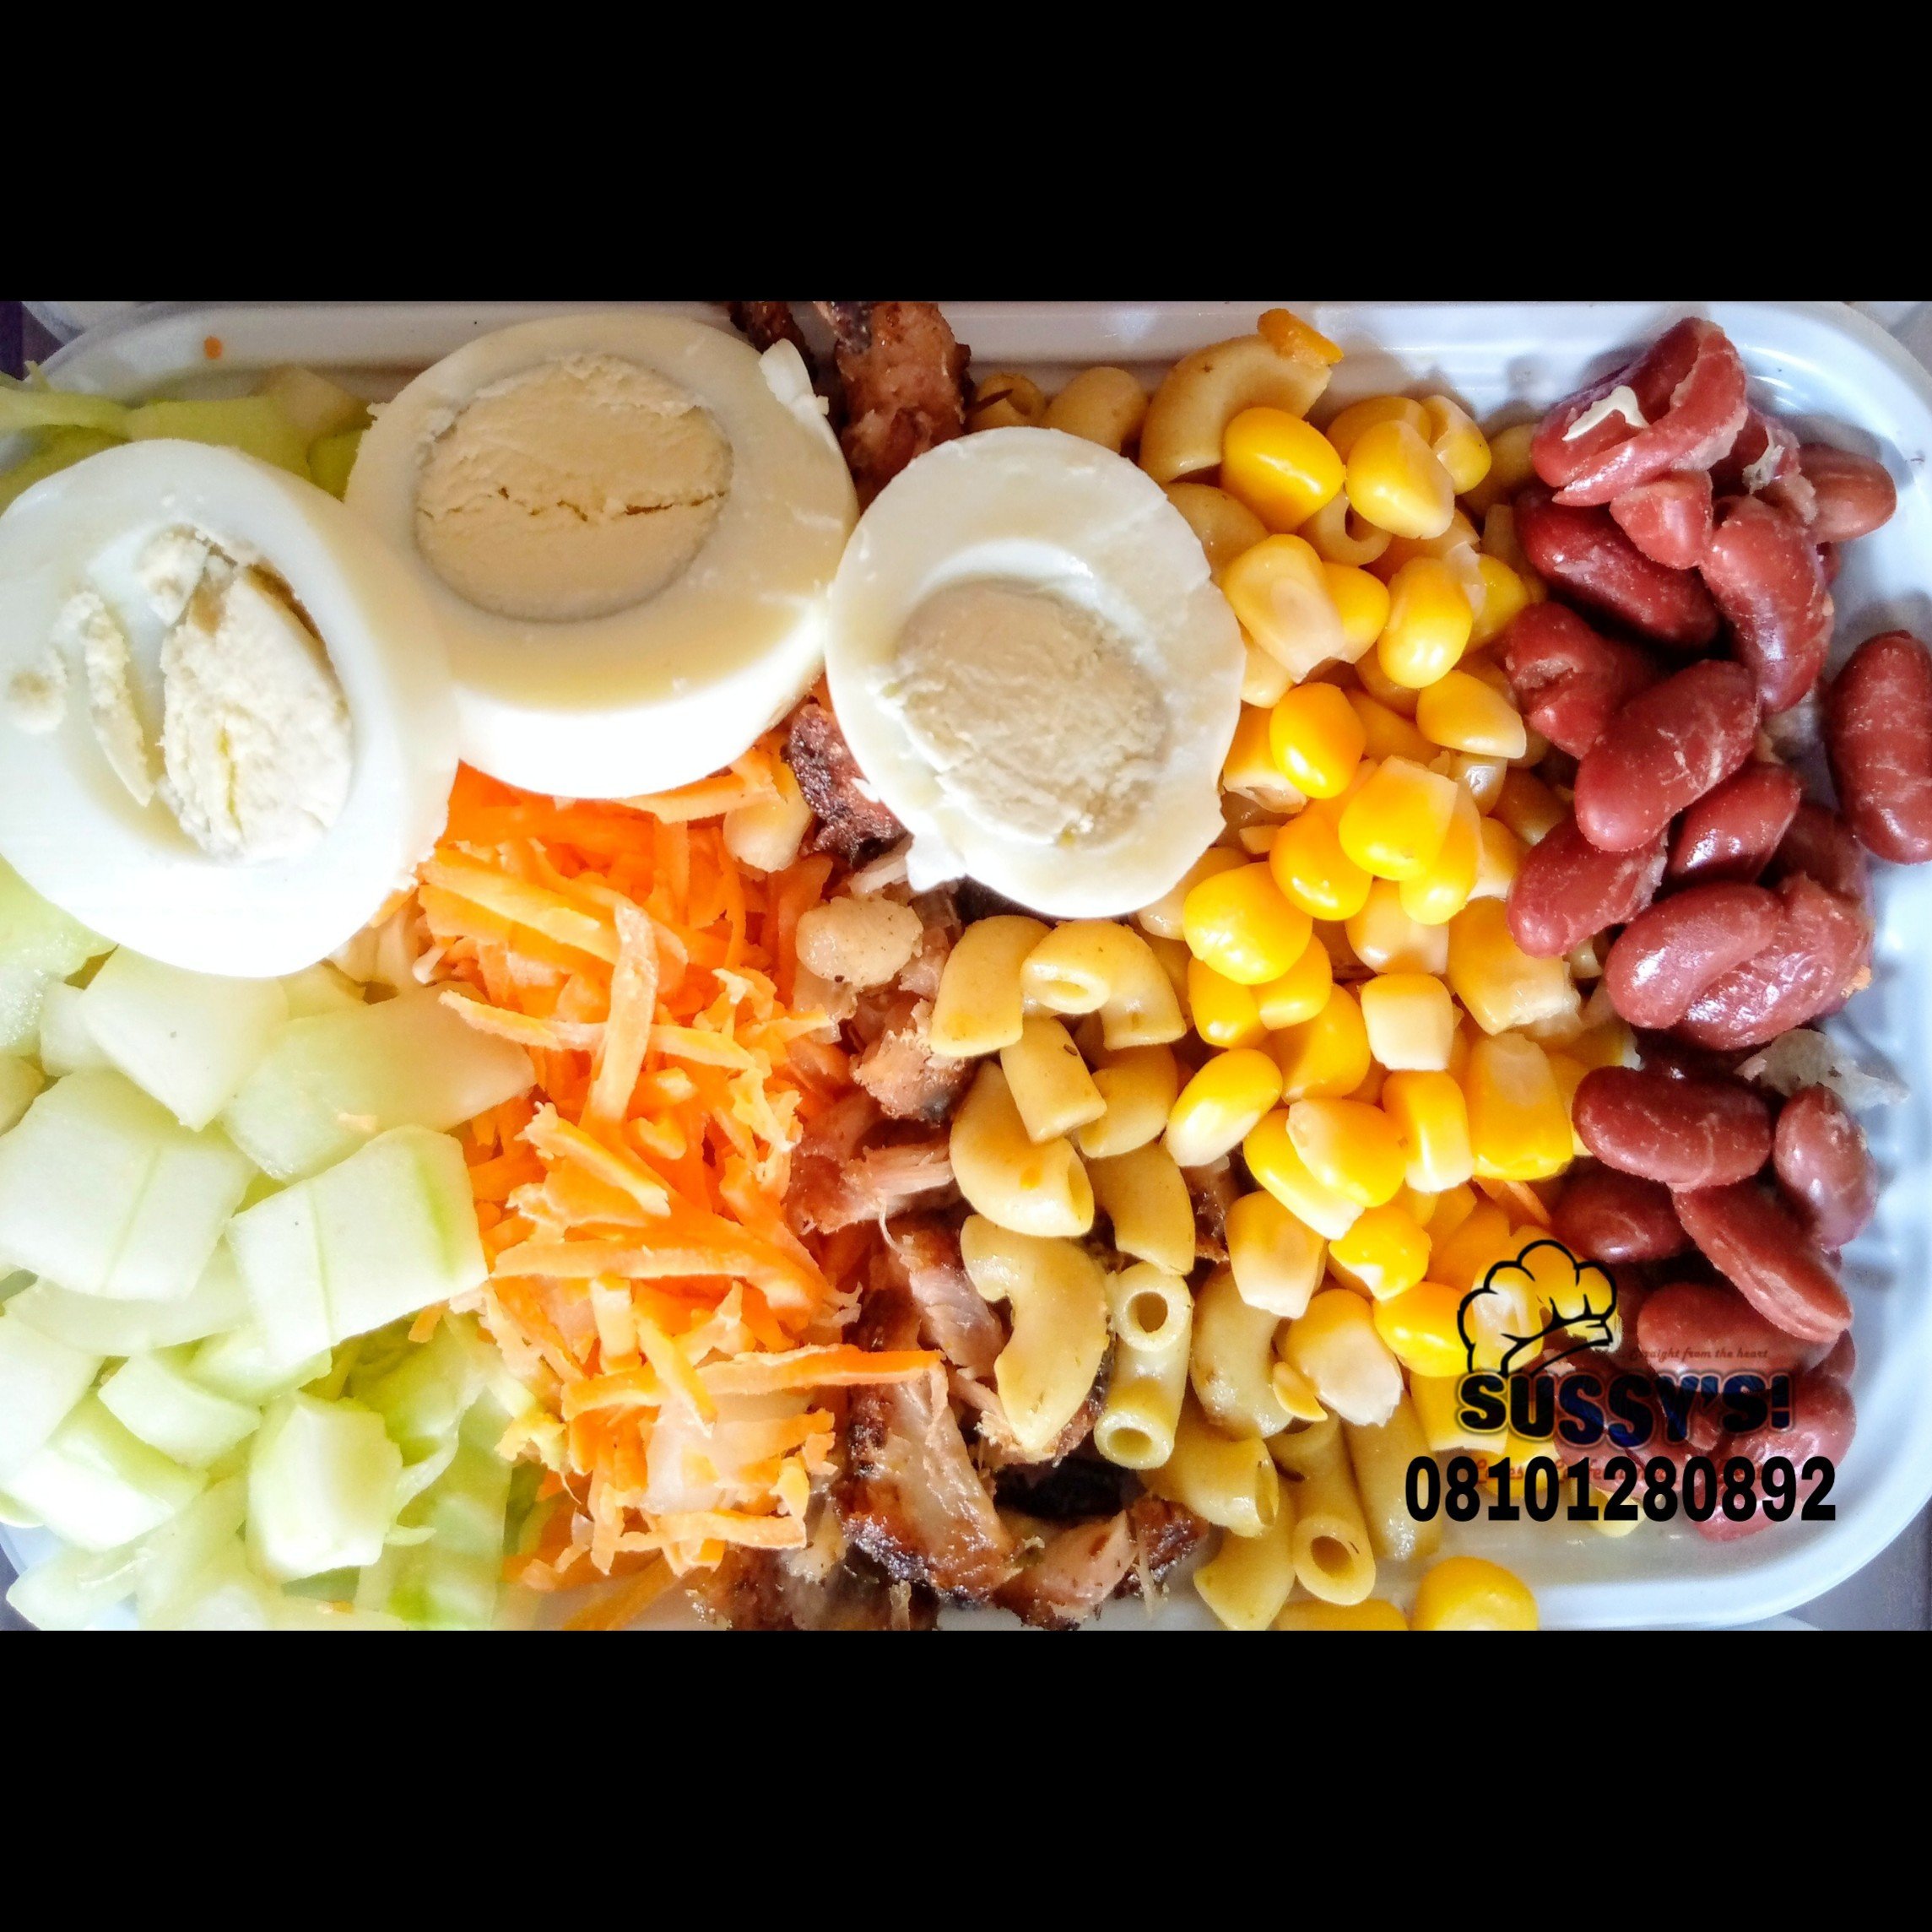 Salad in Lagos, Lagos Salad Vendor, Healthy Salad in Lagos